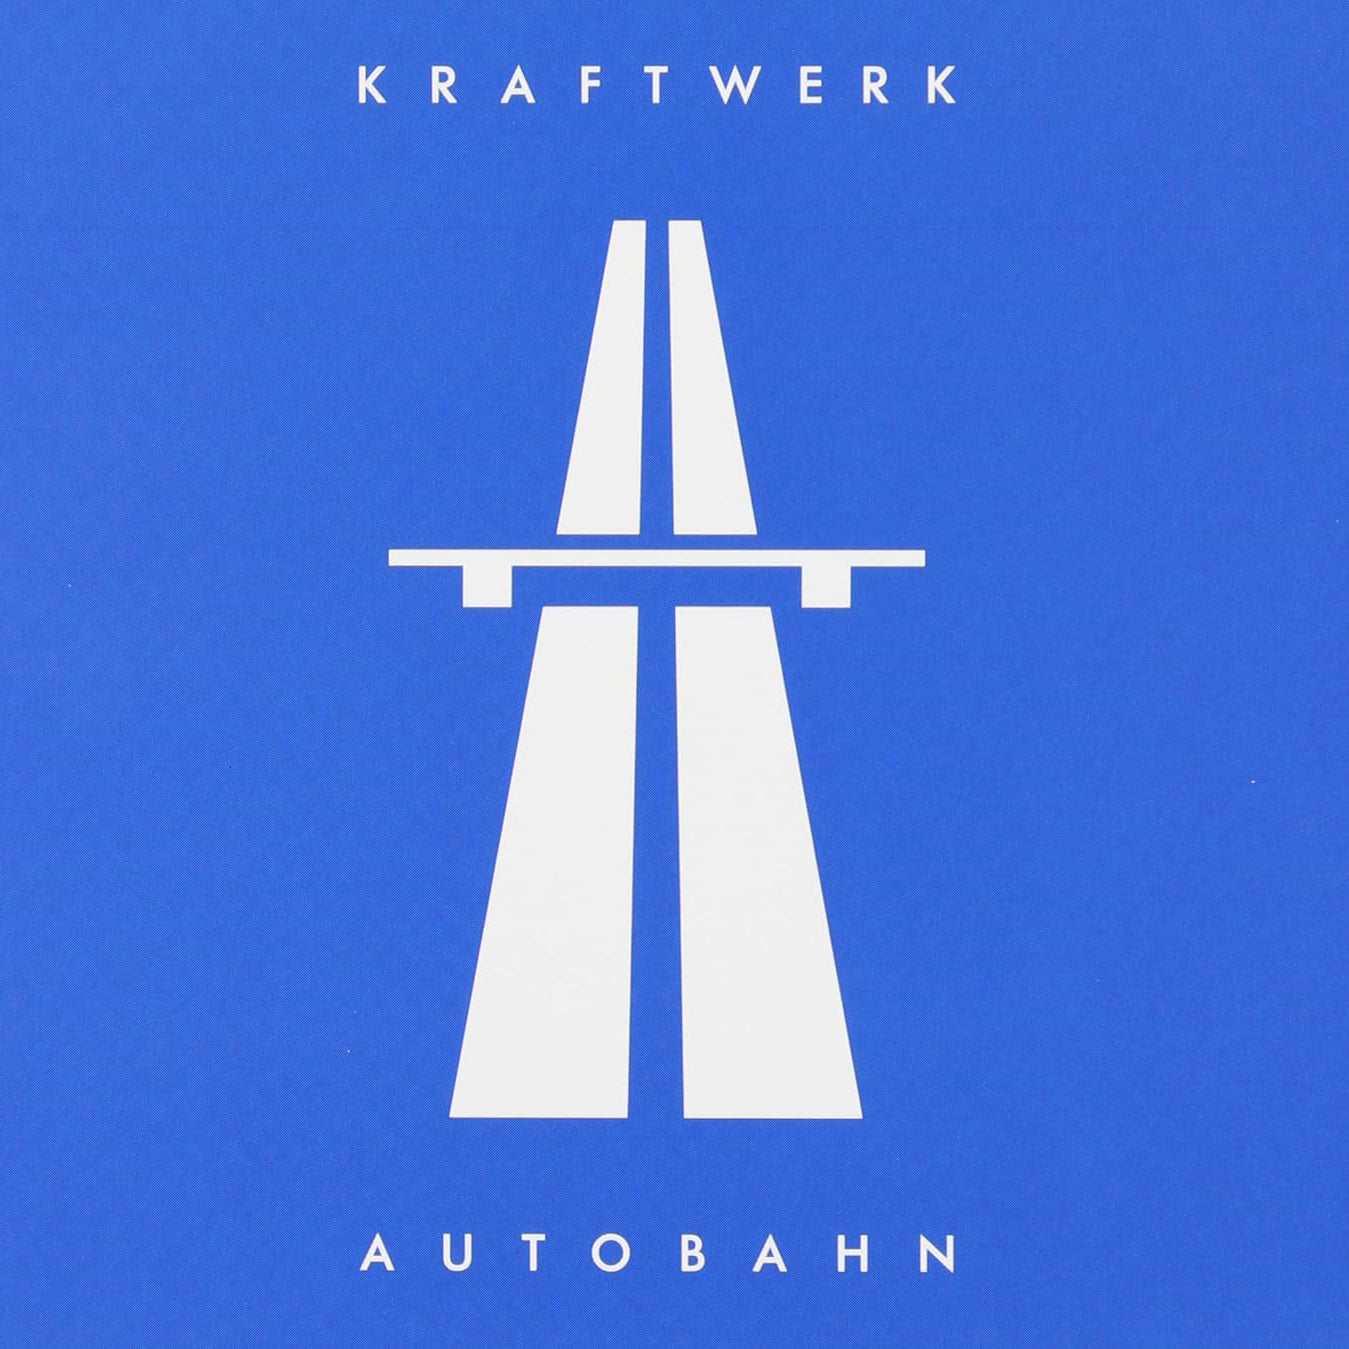 KRAFTWERK – Autobahn